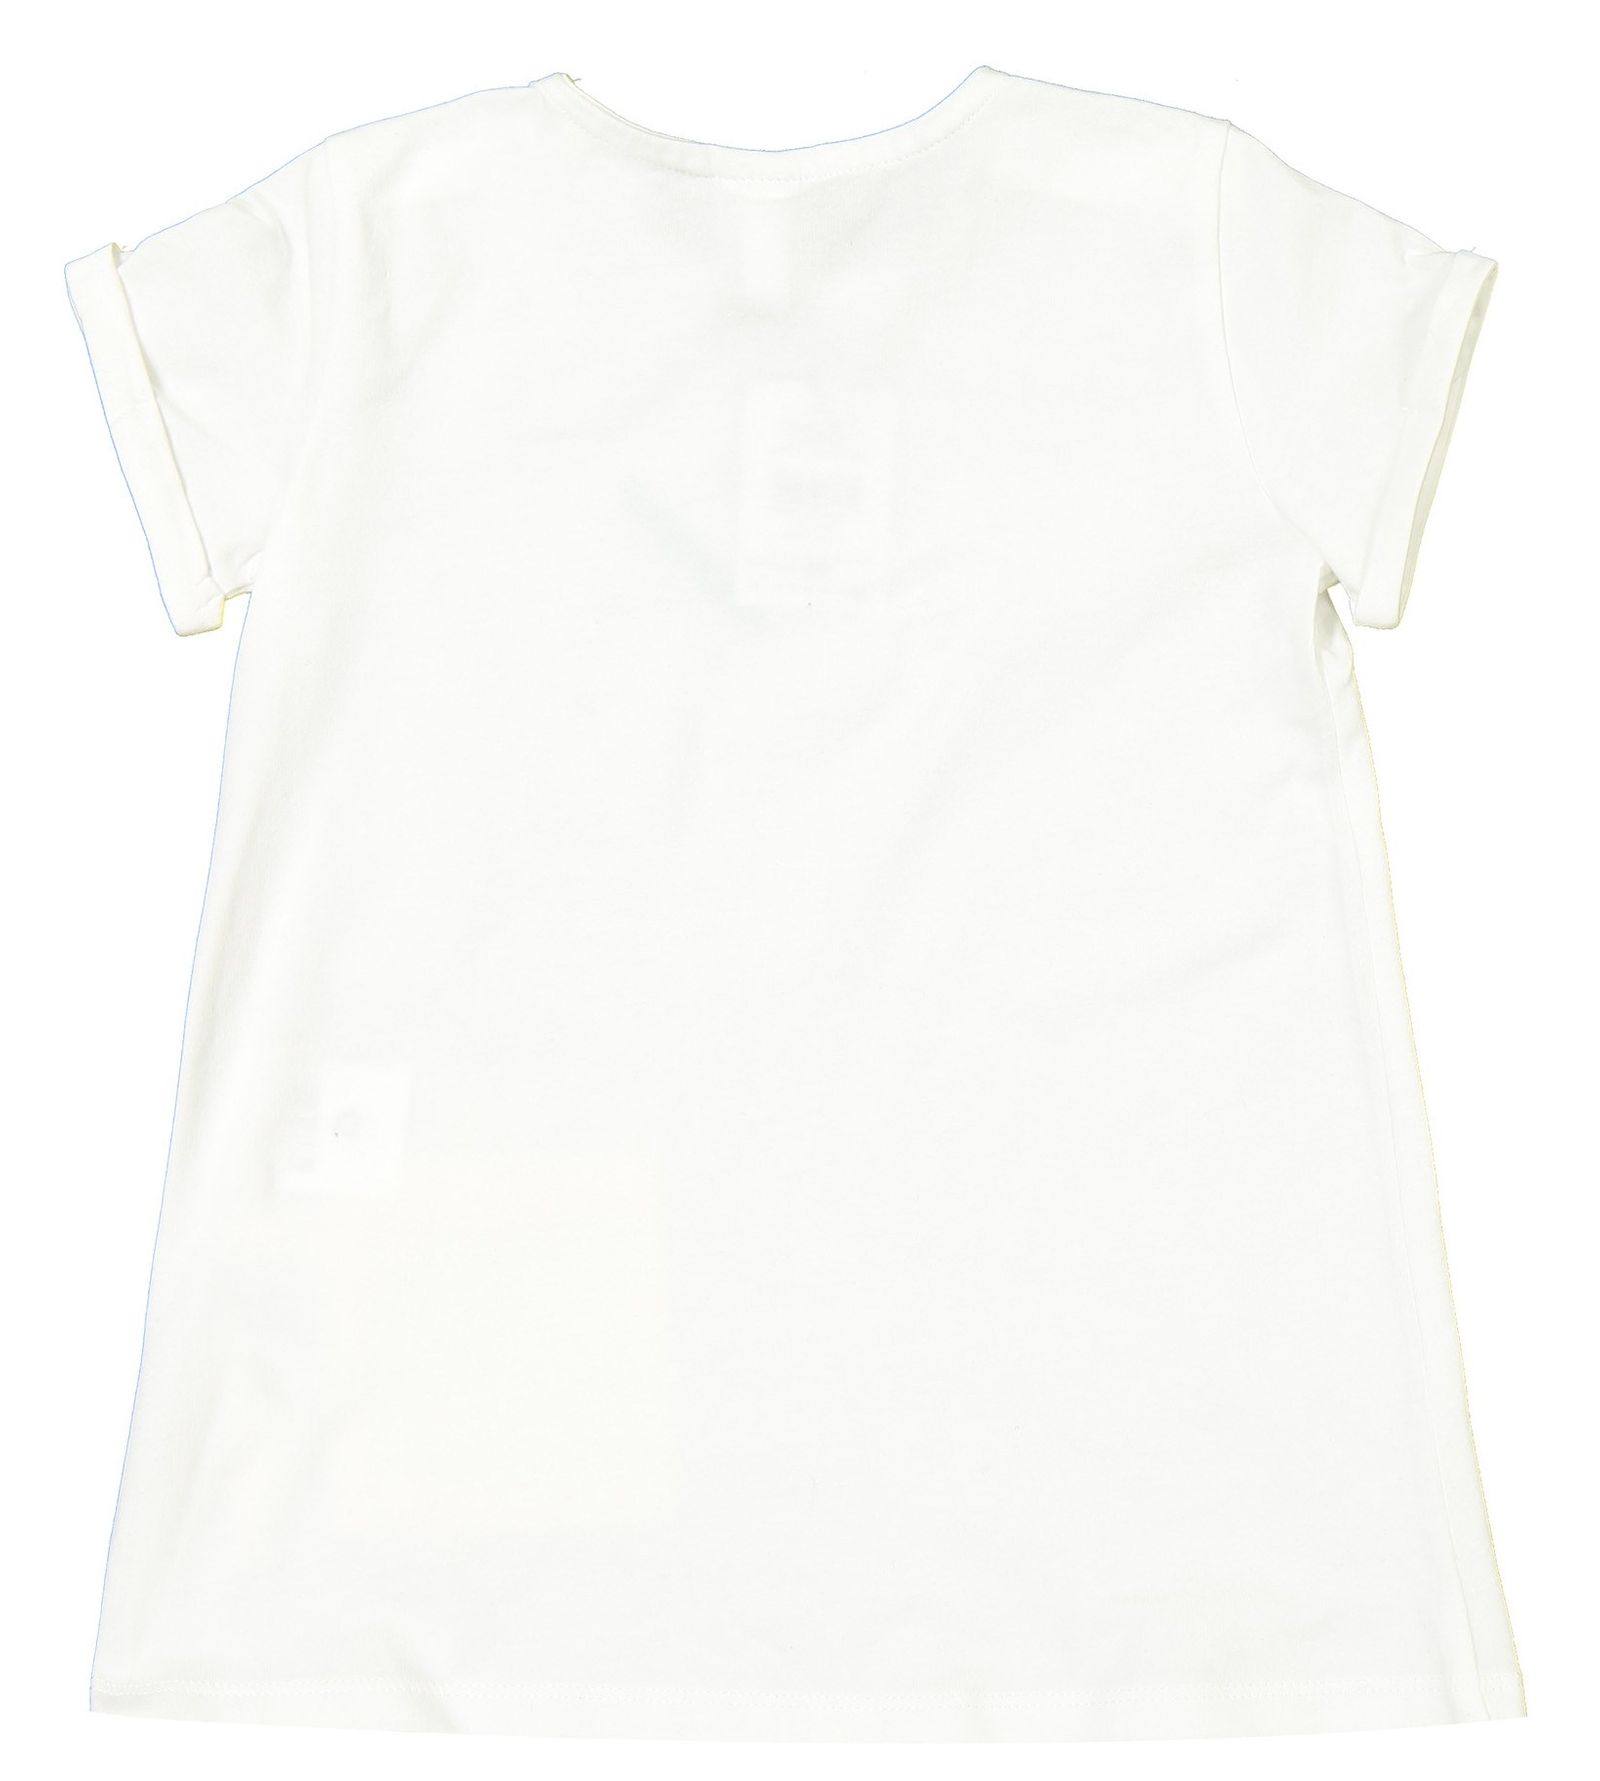 تی شرت و شلوار نخی نوزادی دخترانه - بلوکیدز - زرد و سفيد - 4